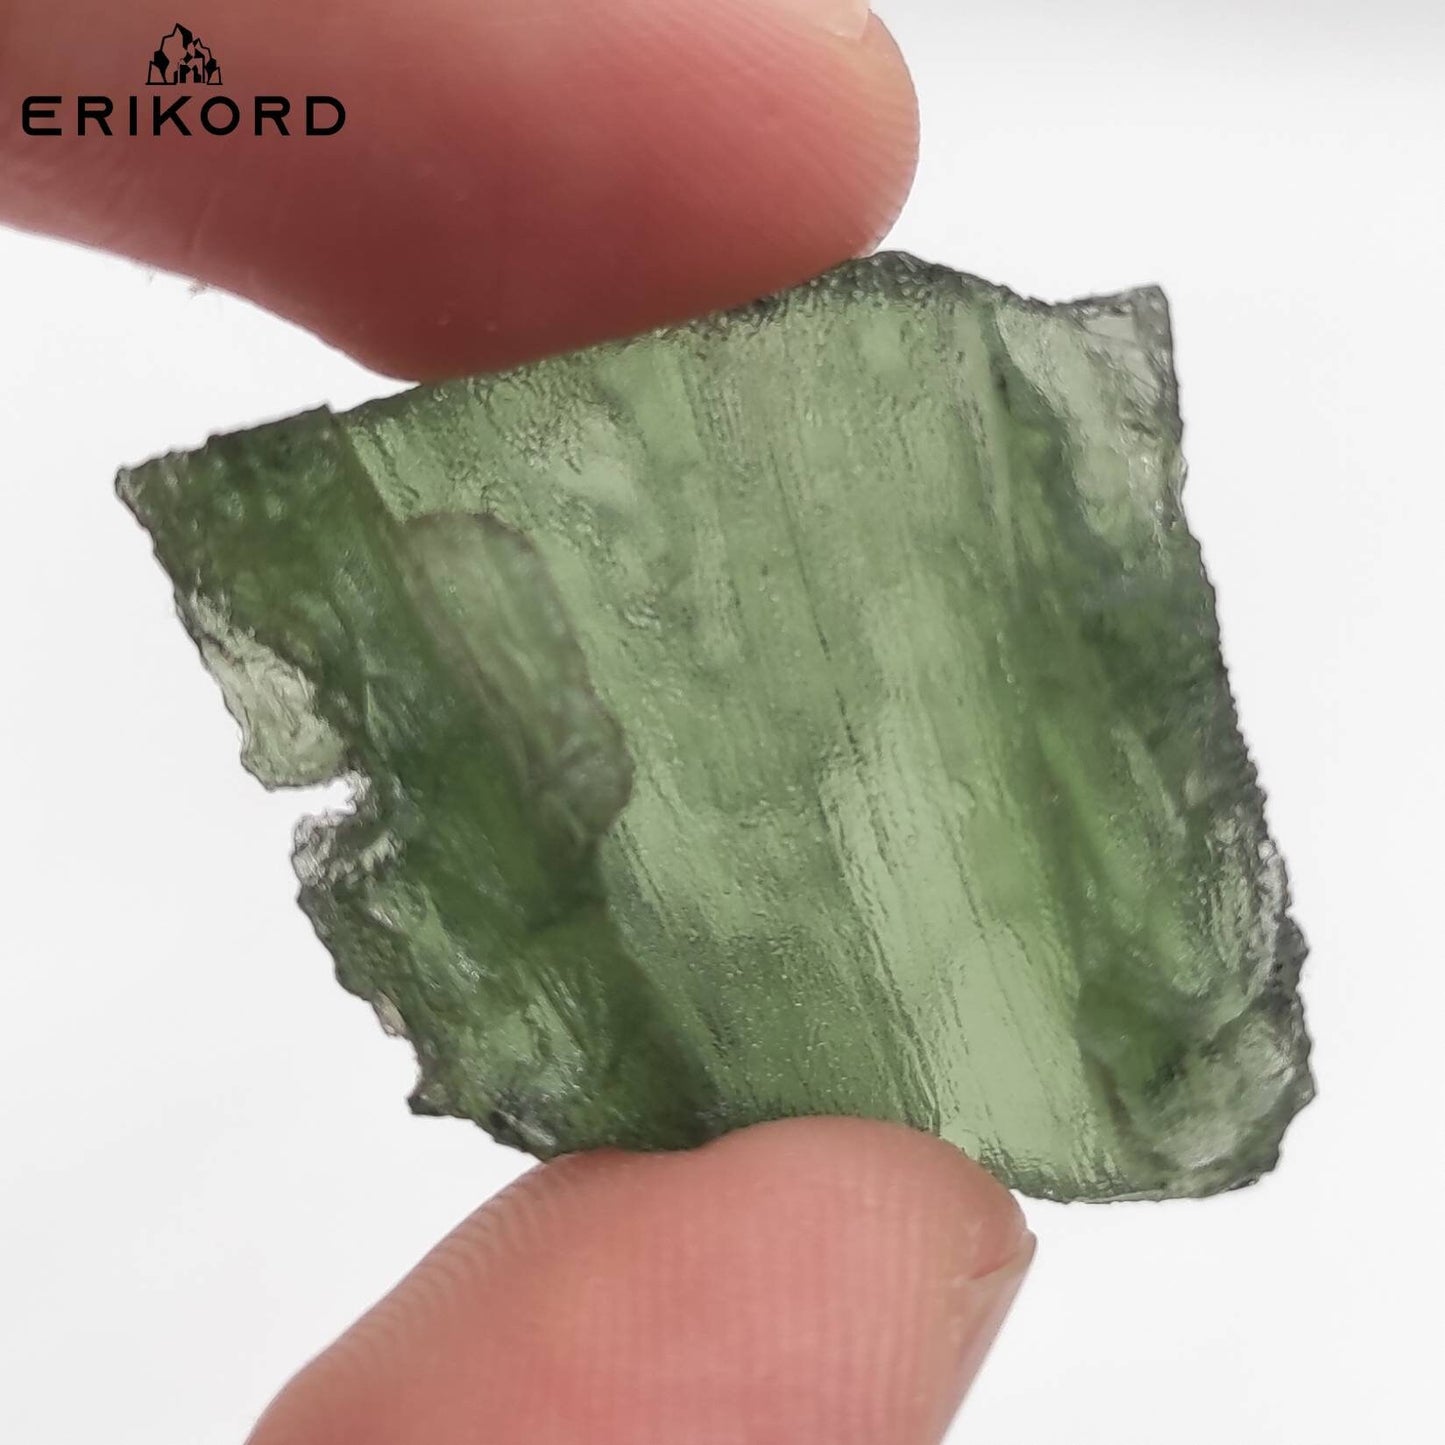 5.11g Rare Moldavite Specimen GENUINE Moldavite Czech Republic Raw Moldavite Authentic Moldavite Real Green Moldavite High Energy Crystal